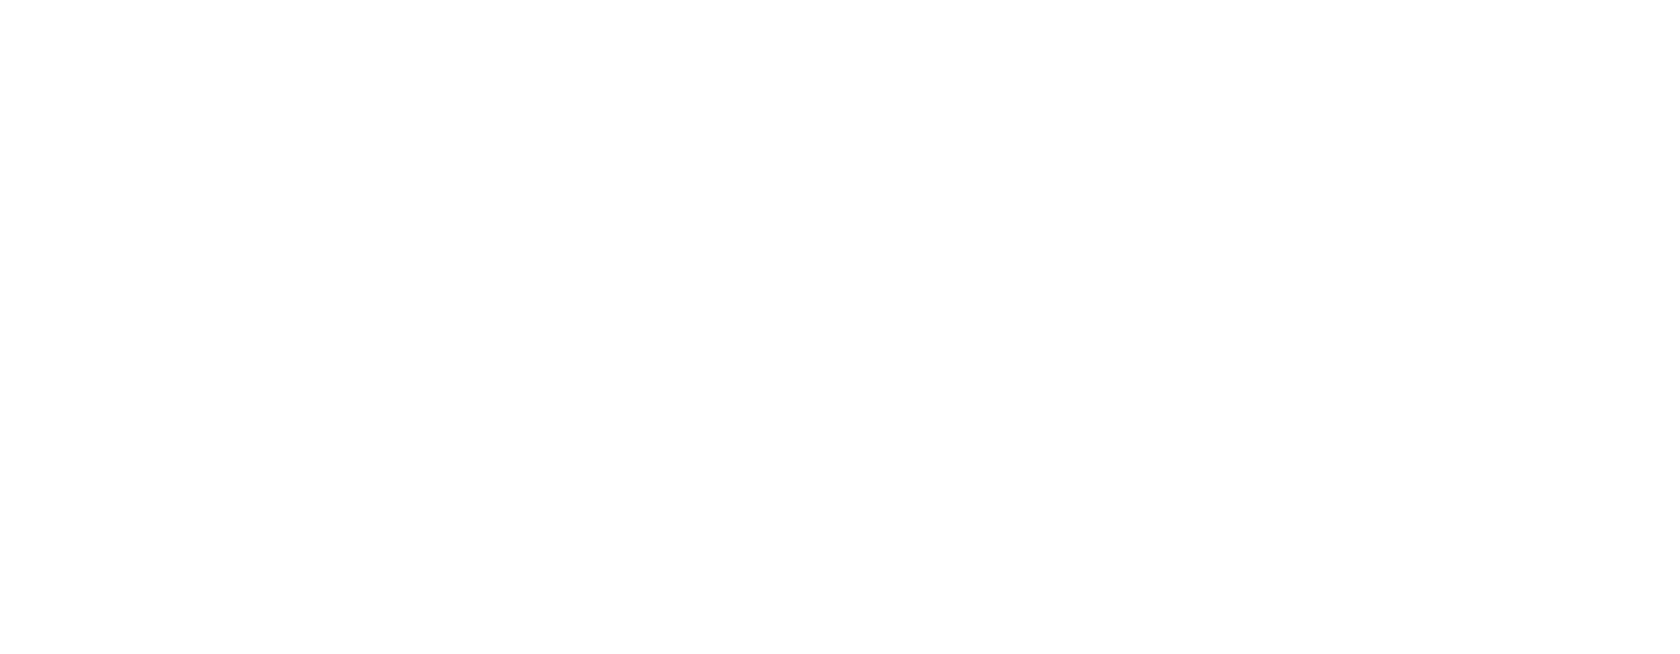 XFLAG FREAK2018 チケット 6/29(金) 開催 XFLAG FREAK2018の入場チケットです。